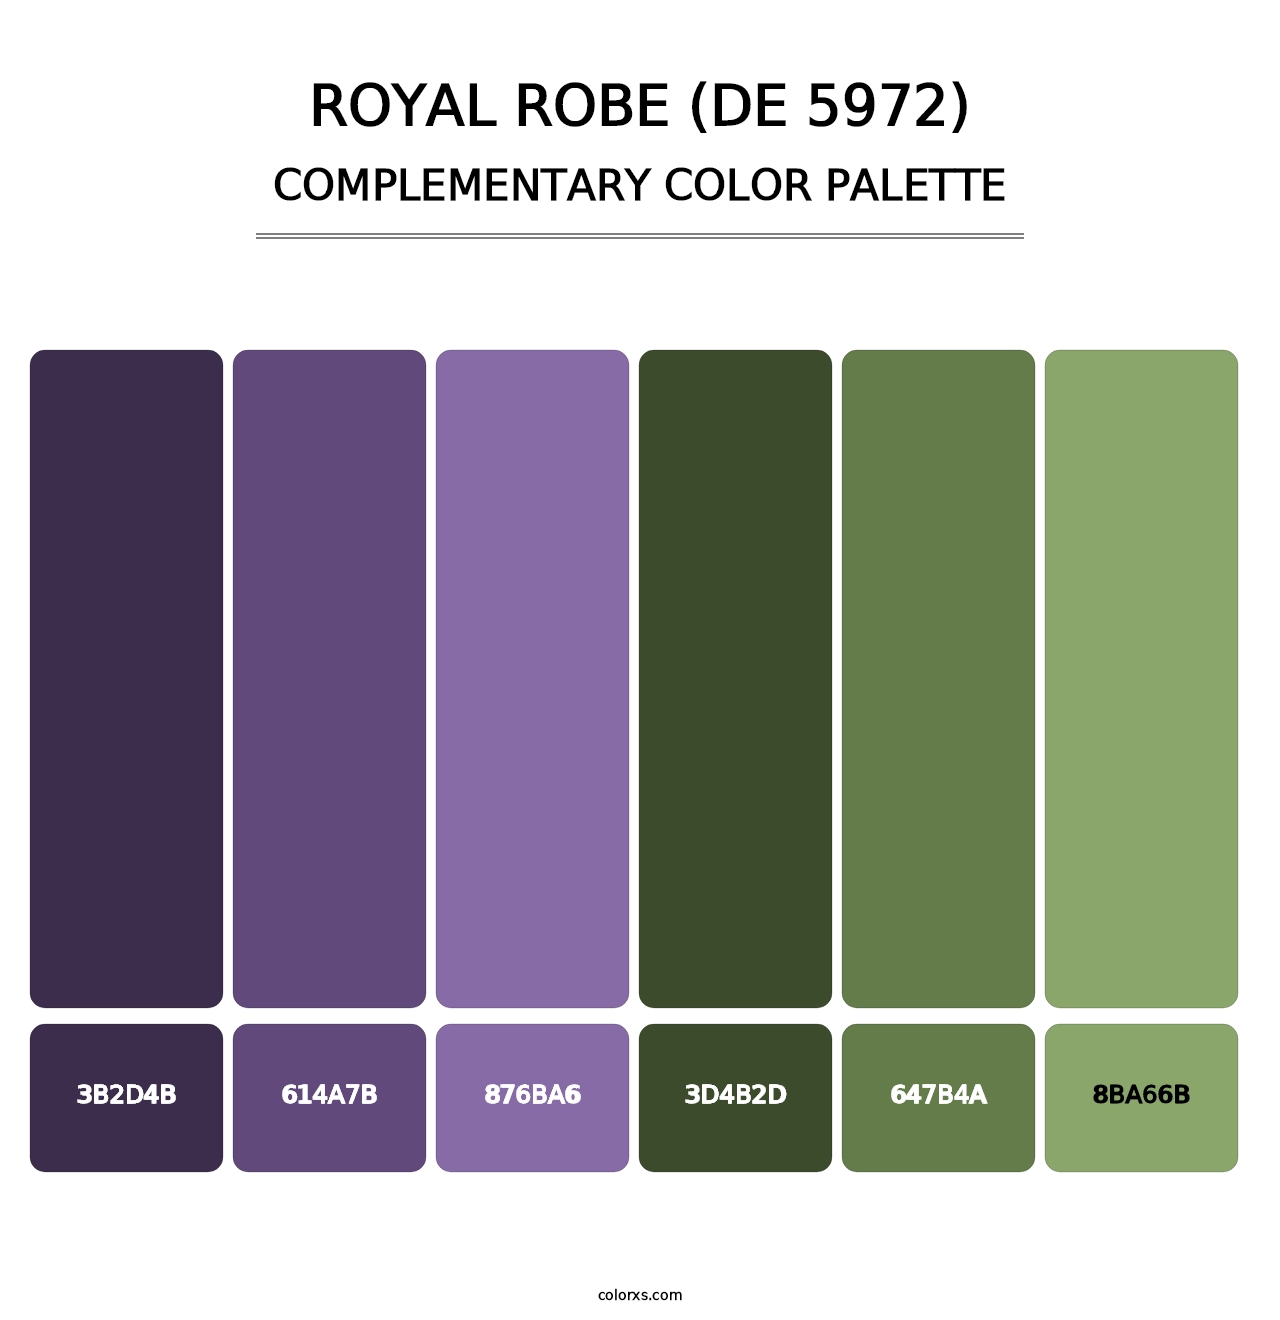 Royal Robe (DE 5972) - Complementary Color Palette